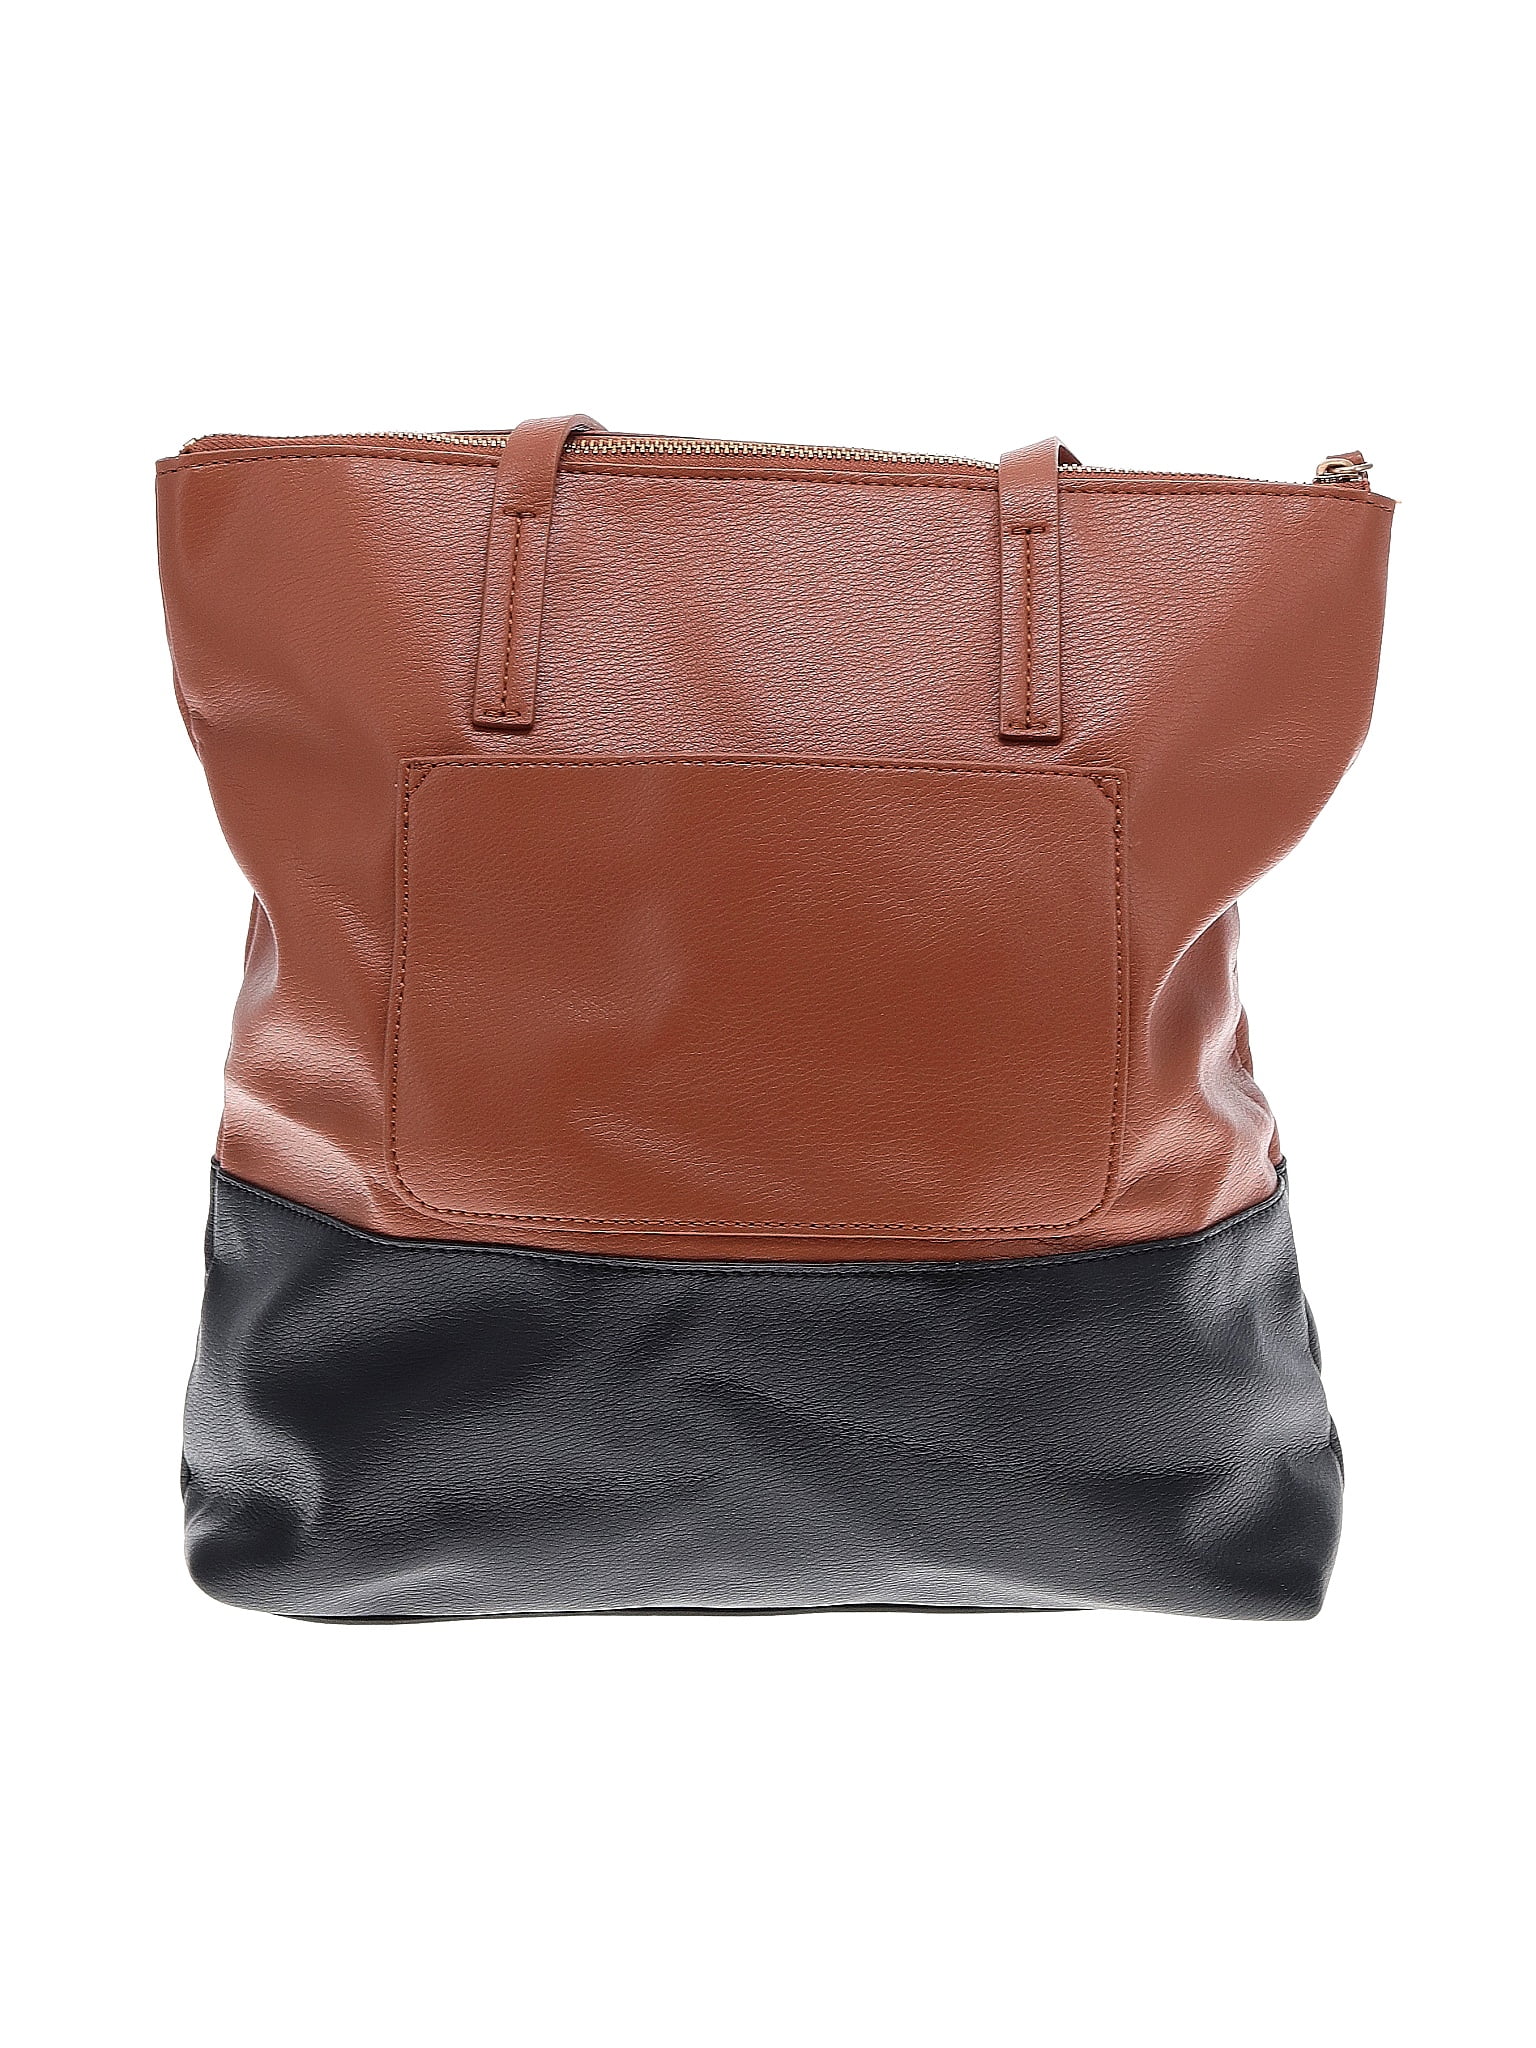 Louis Vuitton Eden Shoulder bag 326207, Elizabeth and James Shoulder Bag